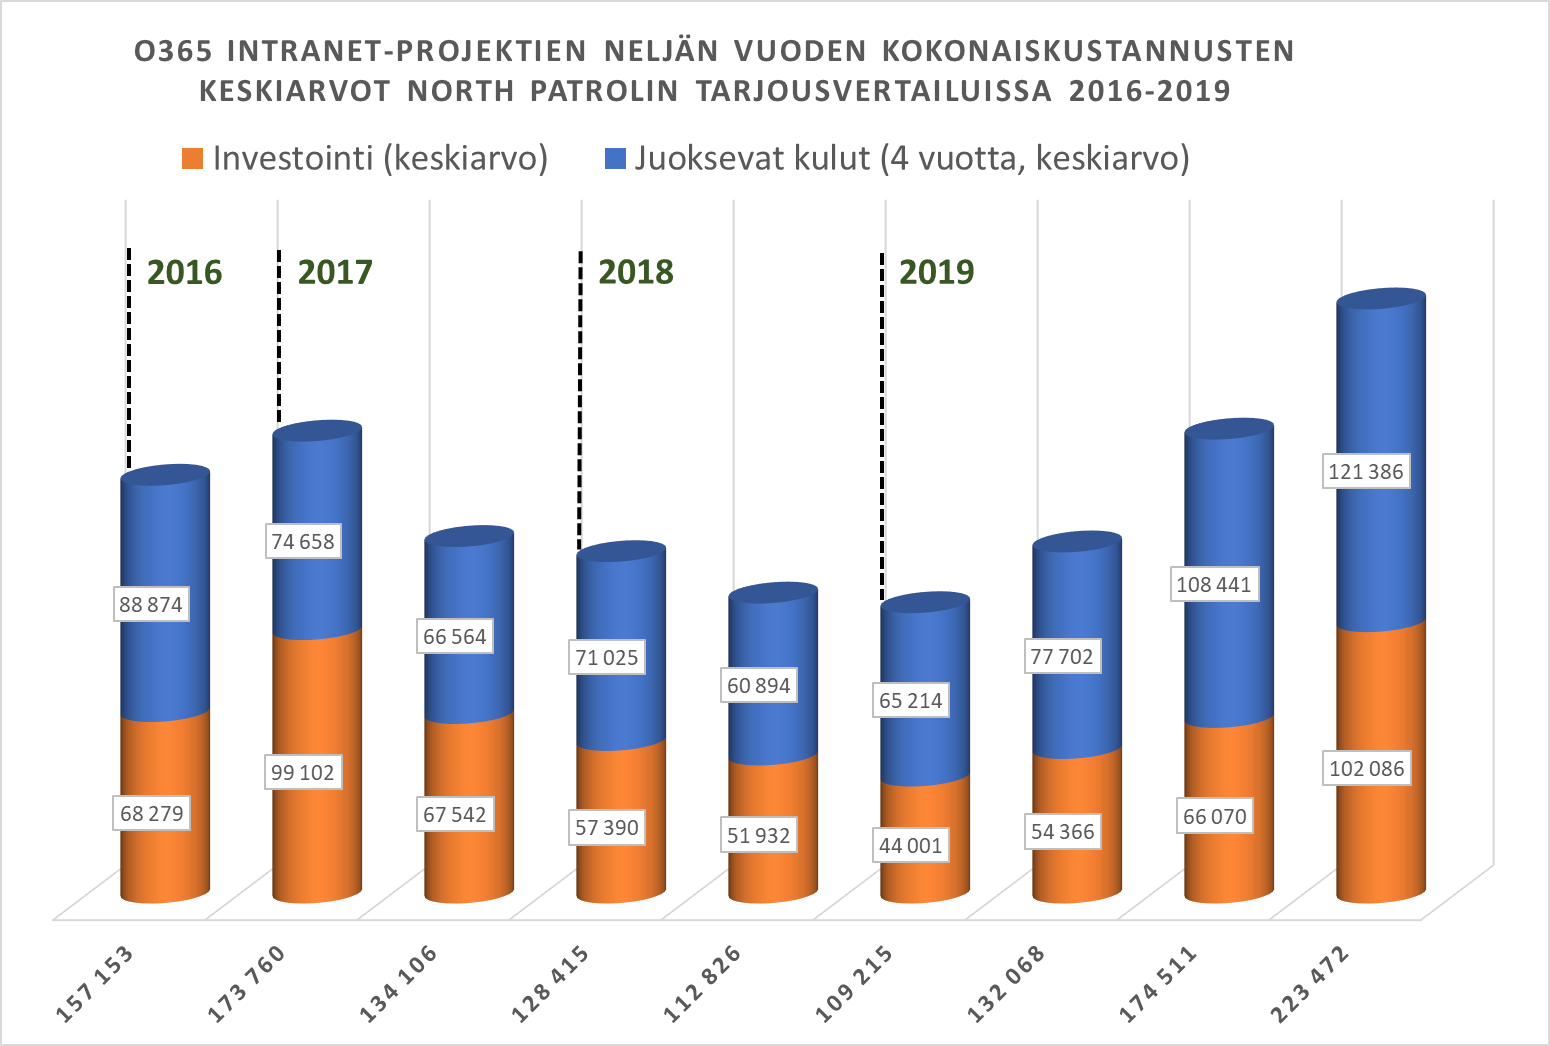 O365 intranet-projektien neljän vuoden kokonaiskustannusten keskiarvot North Patrolin tarjousvertailuissa 2016-2019